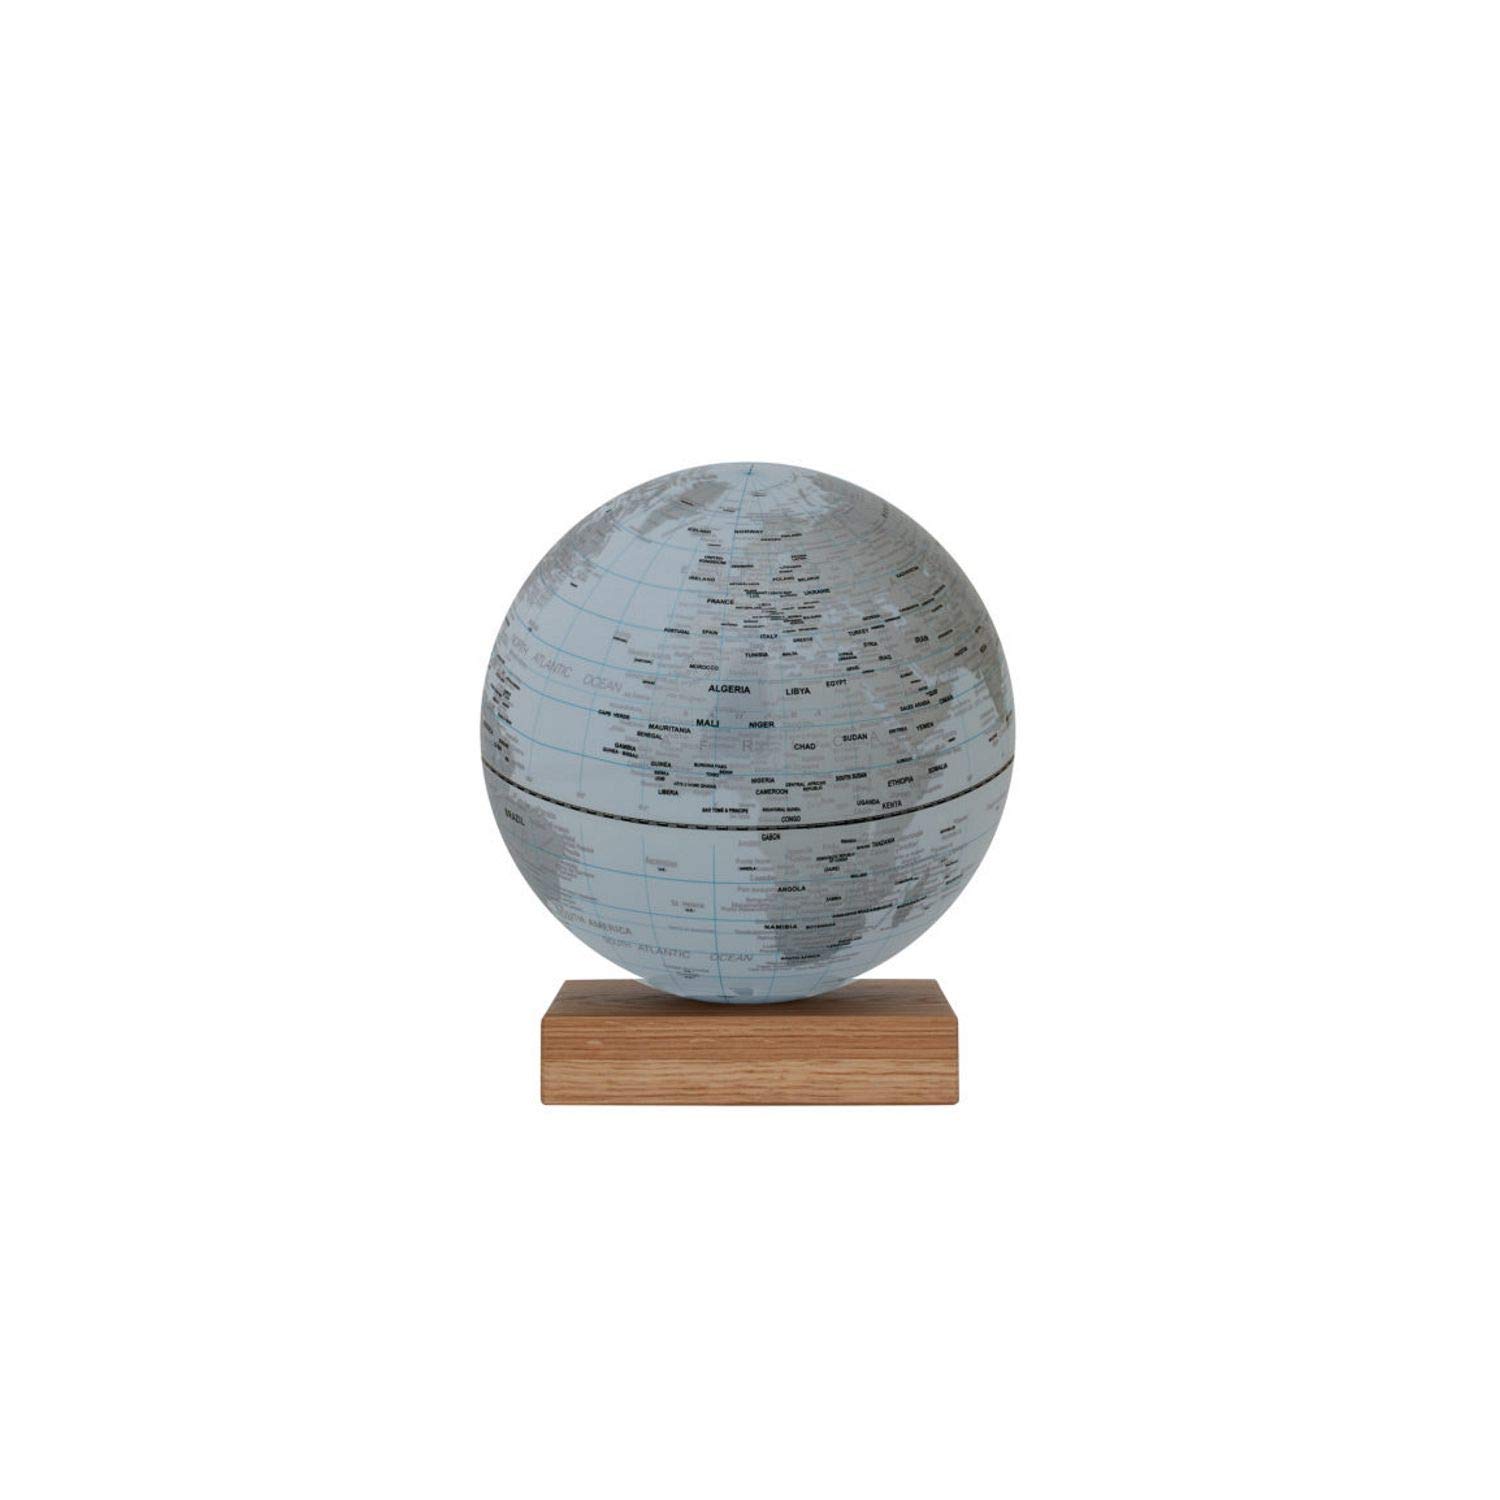 EMFORM Platon Globus magnetisch mit Eichenholz-Sockel Weiß 250 mm